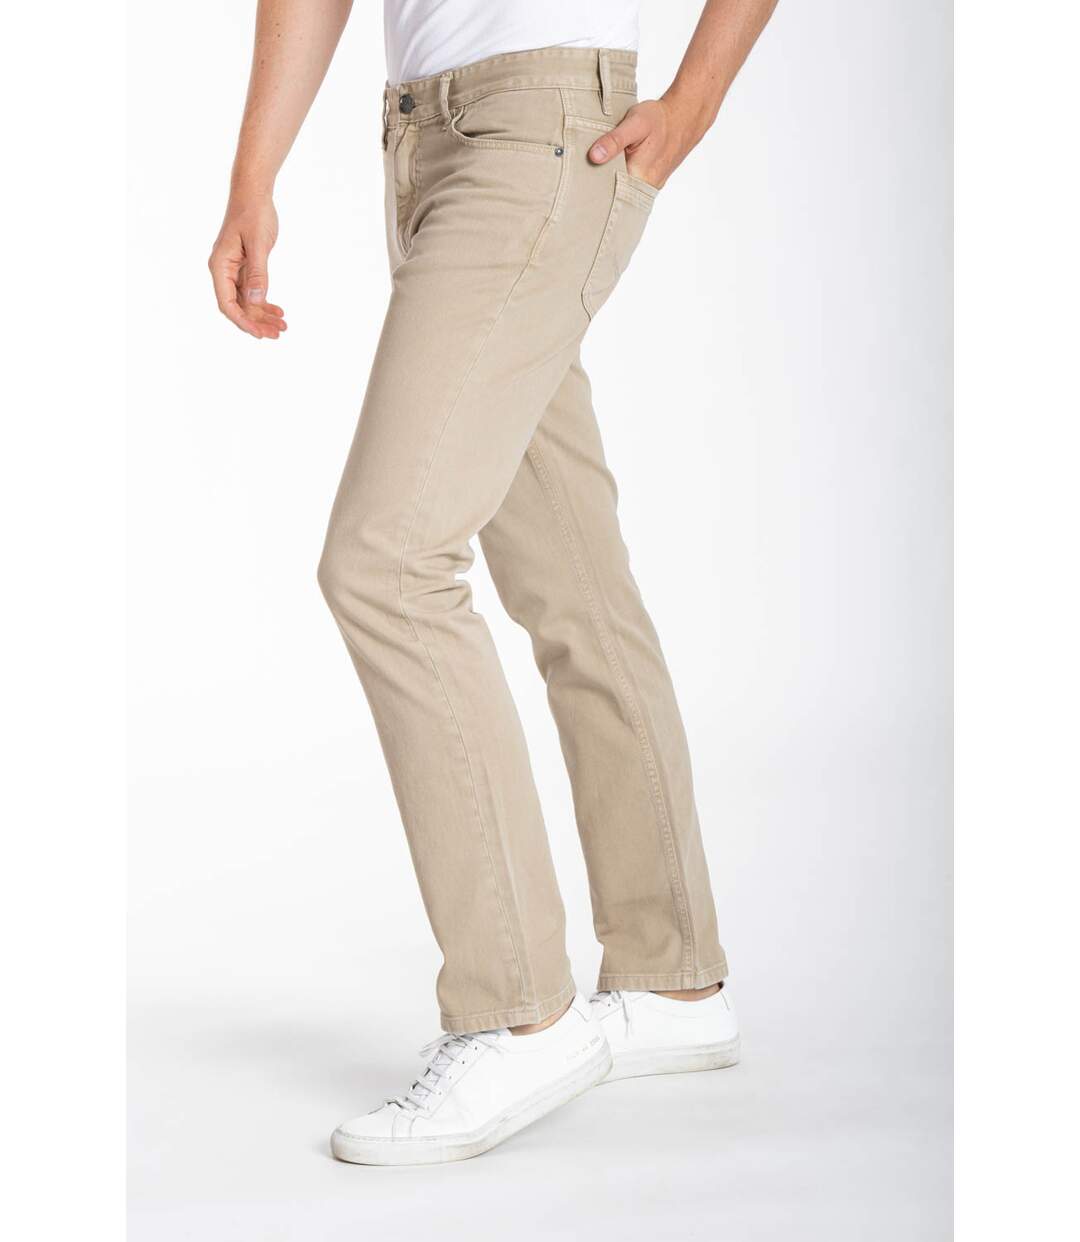 Jeans denim de couleur RL70 coupe confort coton couleur MALACHI rouille